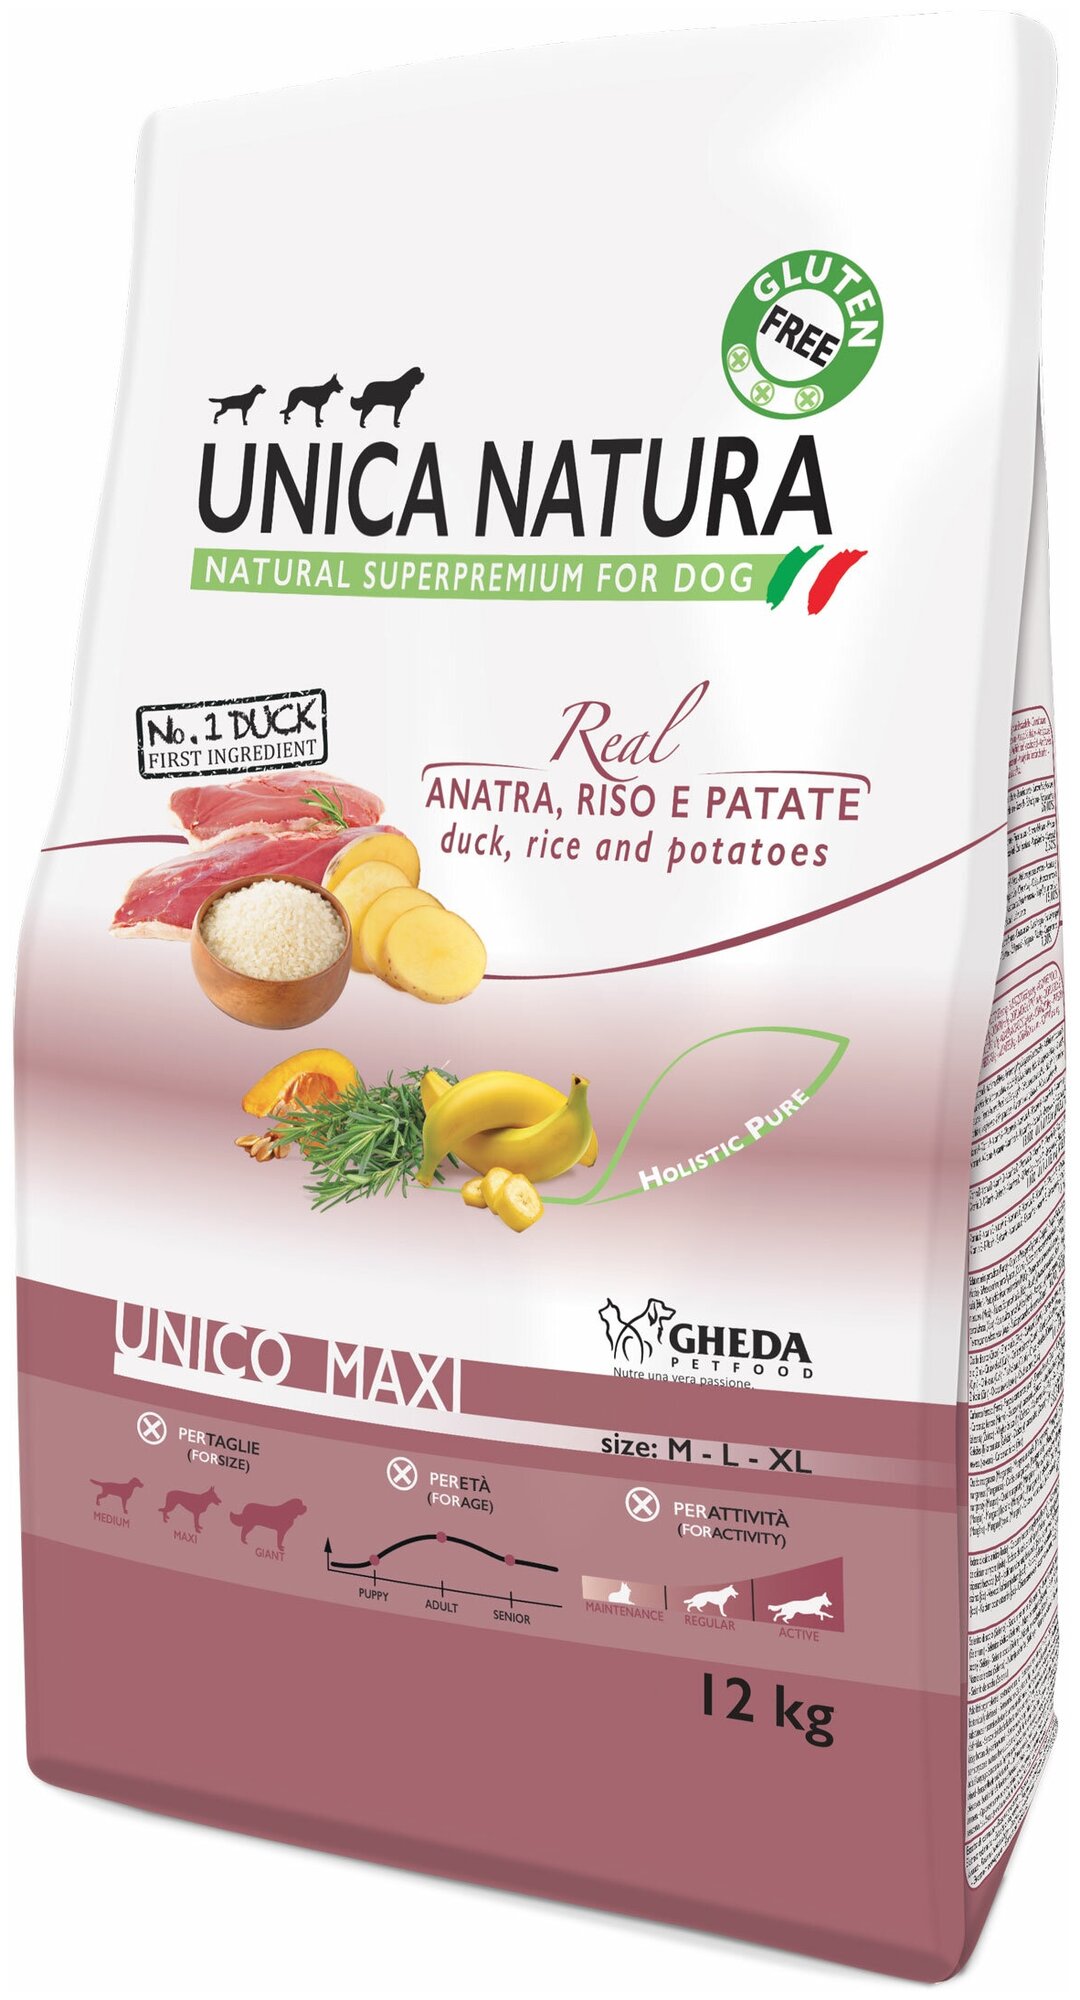 Сухой корм для собак Unica Natura утка, с рисом, с картофелем 2.5 кг (для средних и крупных пород)